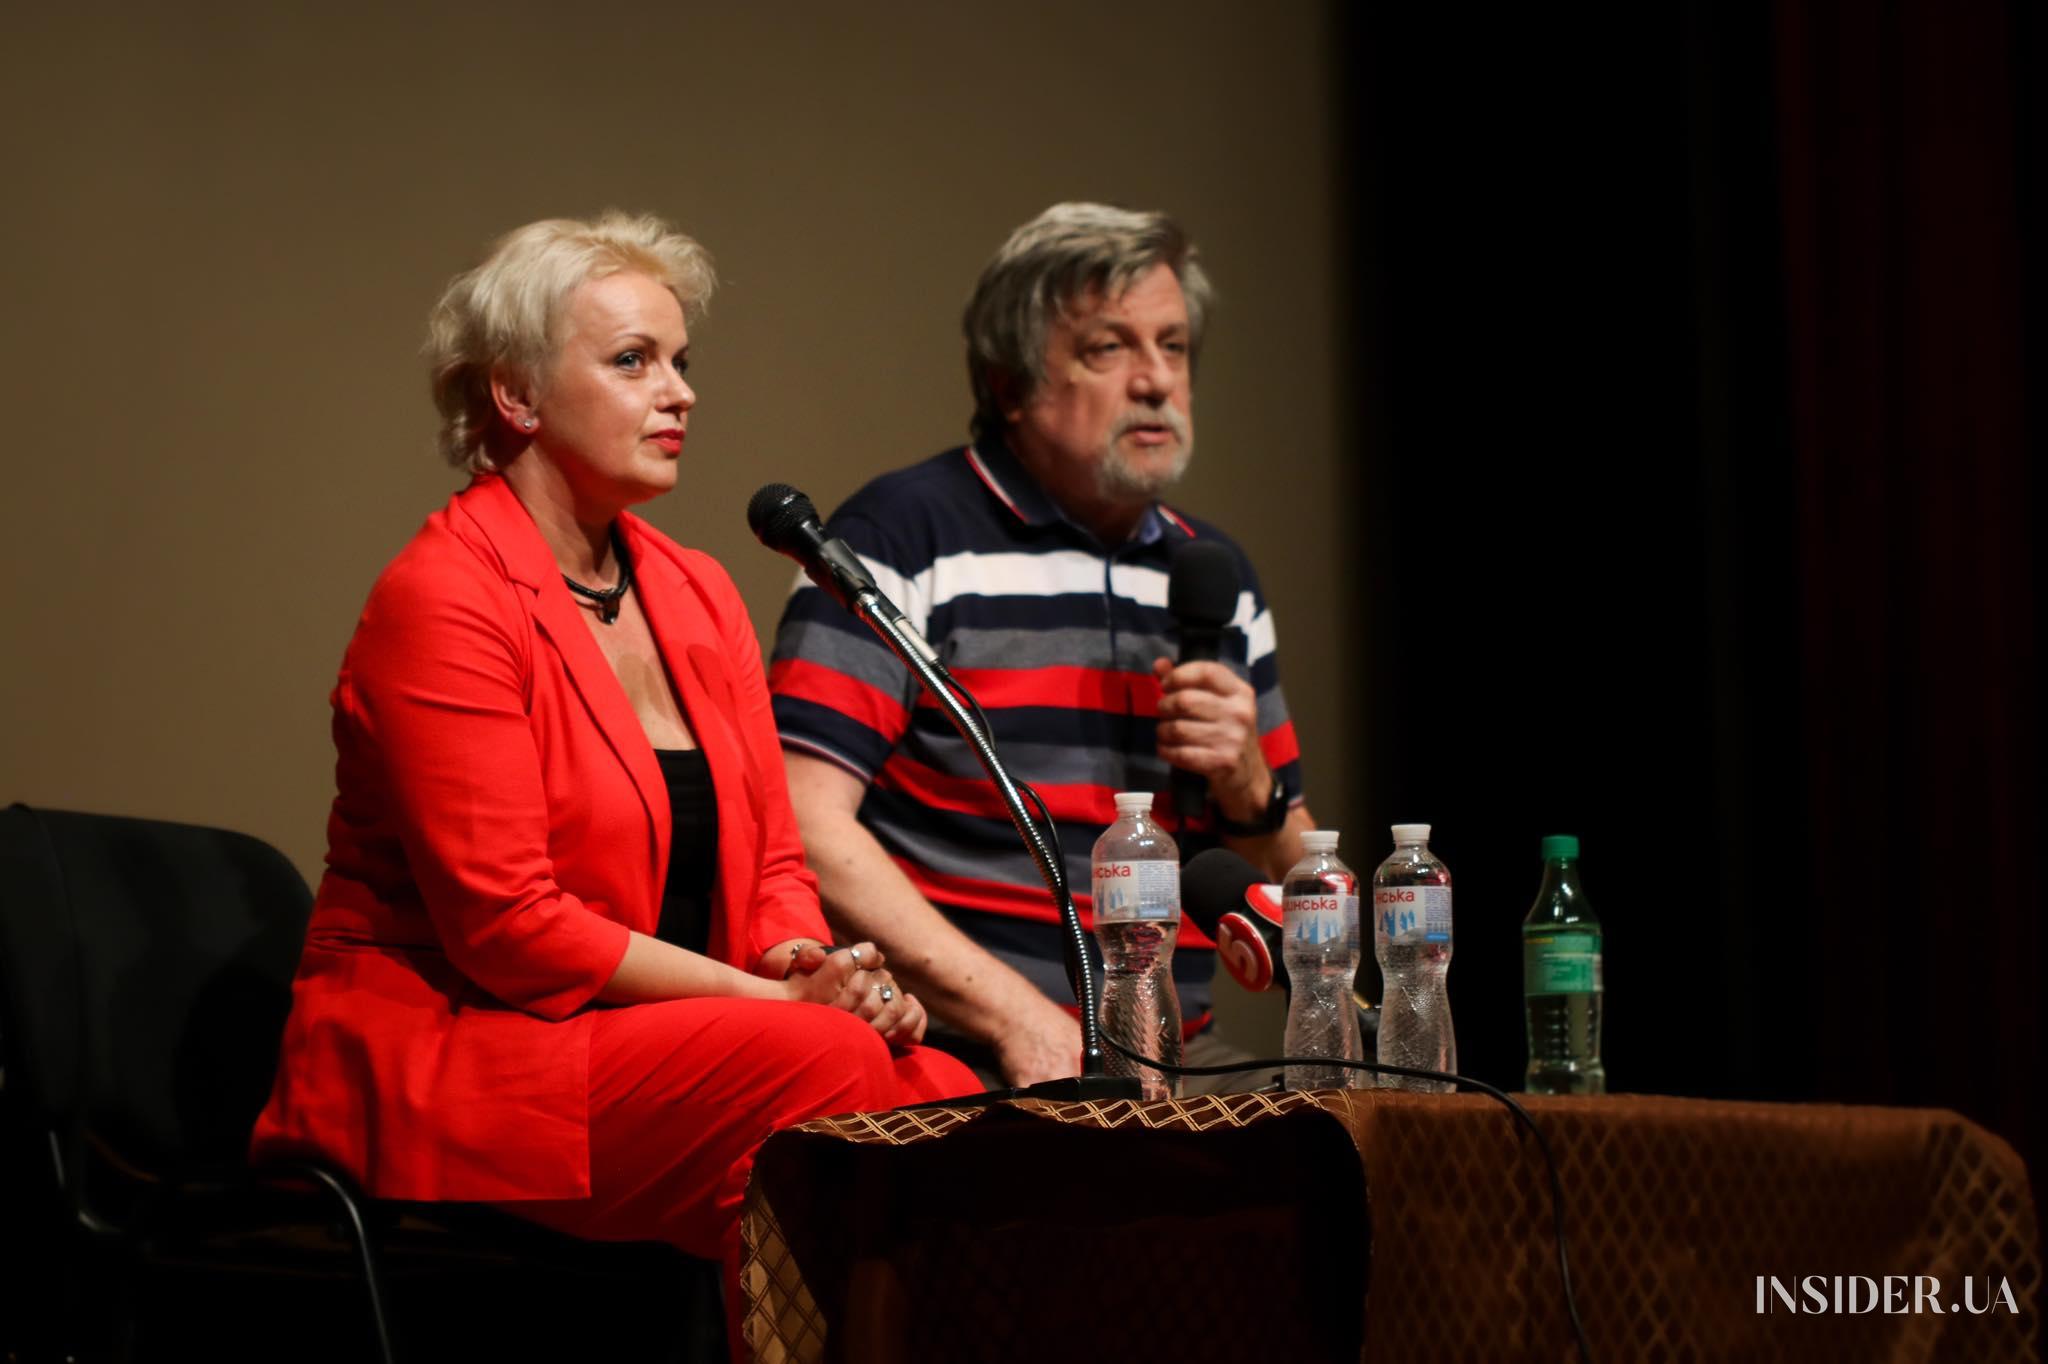 Фронт украинских актеров: в Доме кино стартовал культурный проект «Киносообщество»